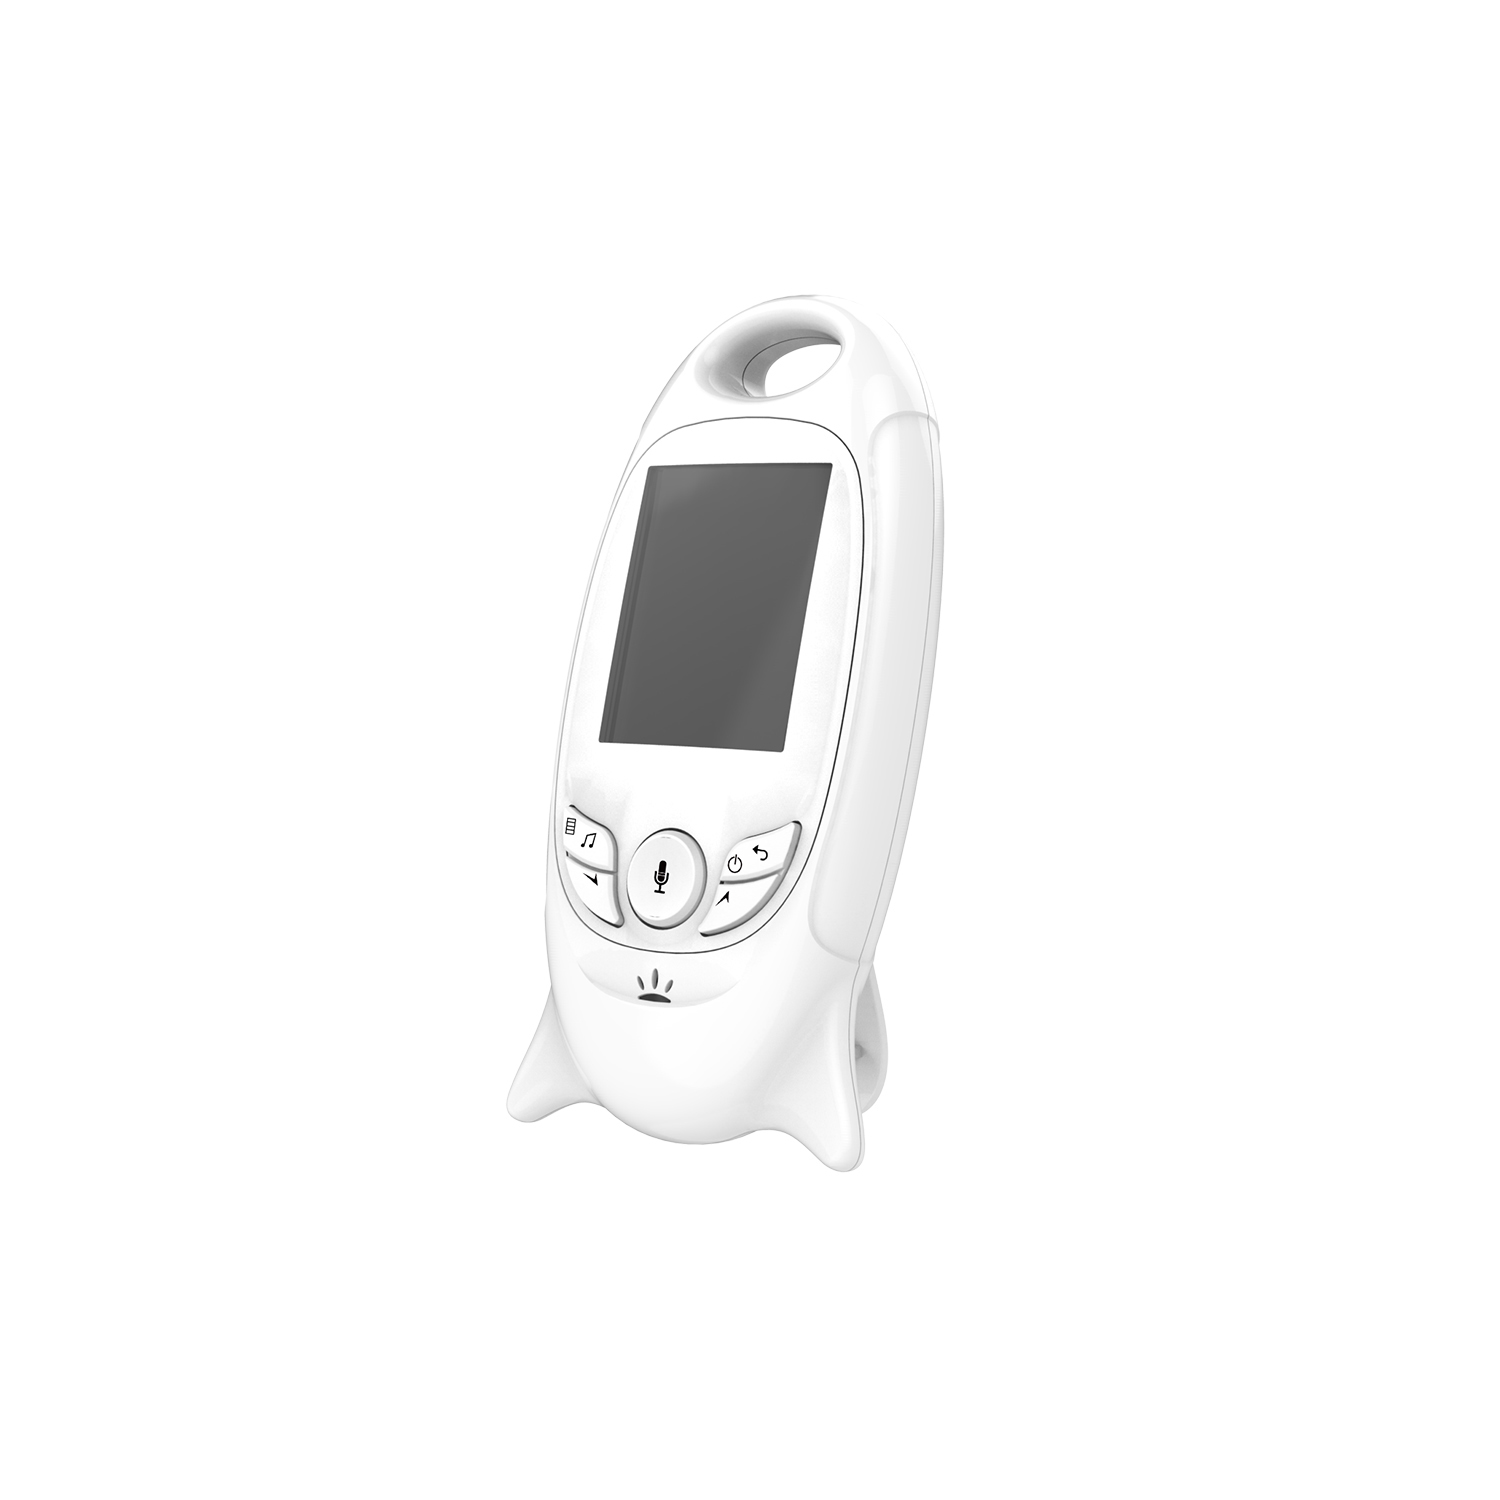 IKIDO 601 Videos Babyphone